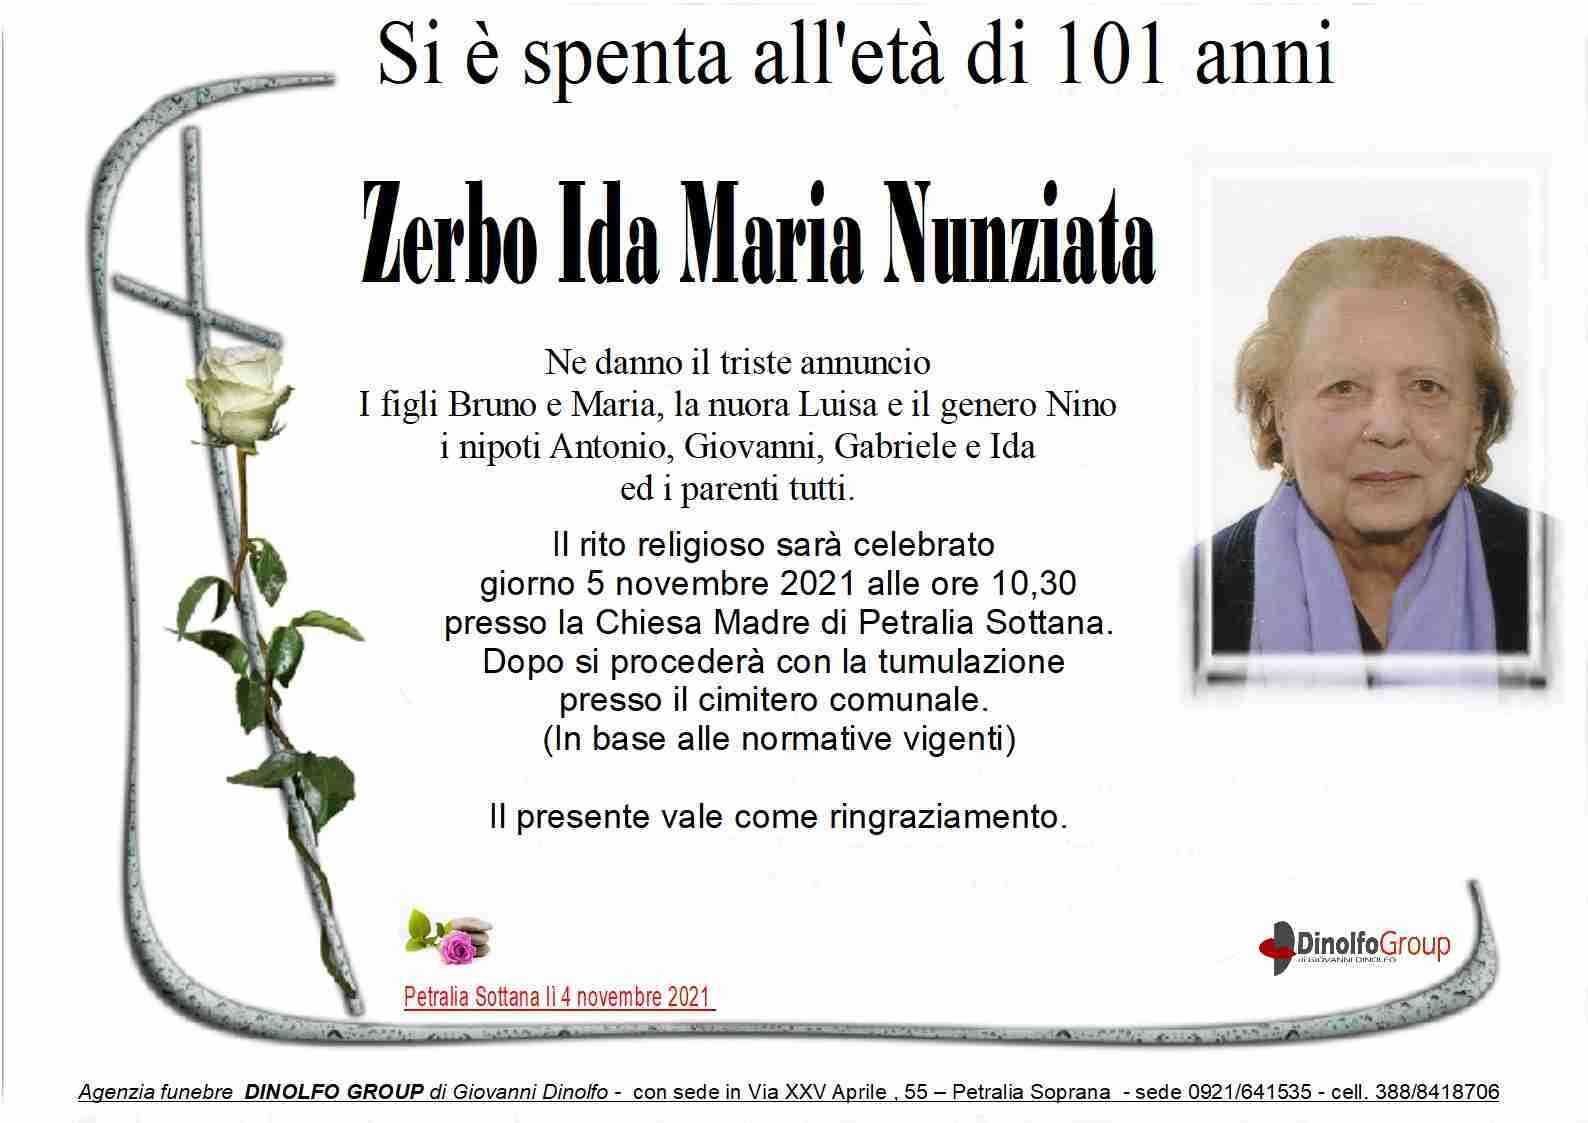 Ida Maria Nunziata Zerbo